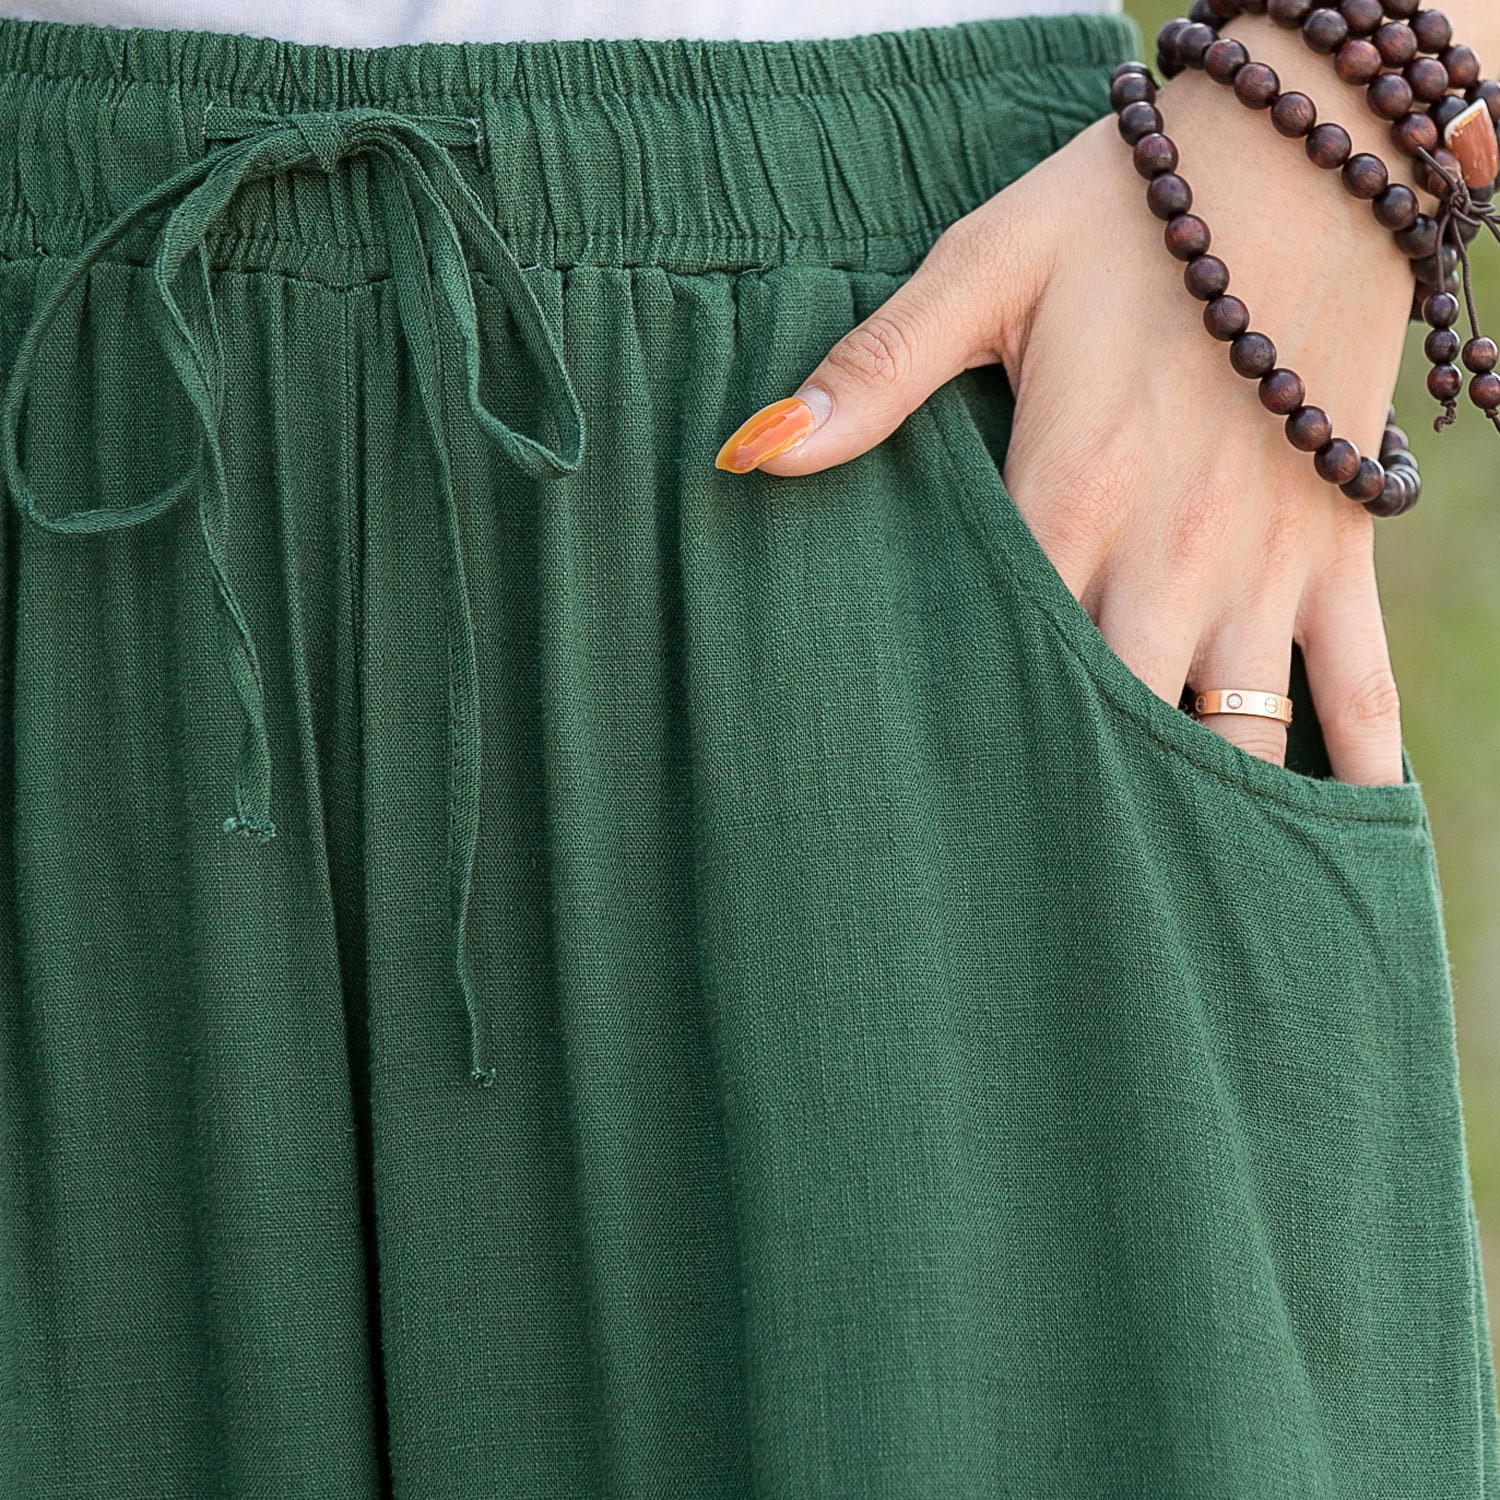 Linen Pants, Palazzo Pants, Wide Leg Pants, Green Linen Skirt